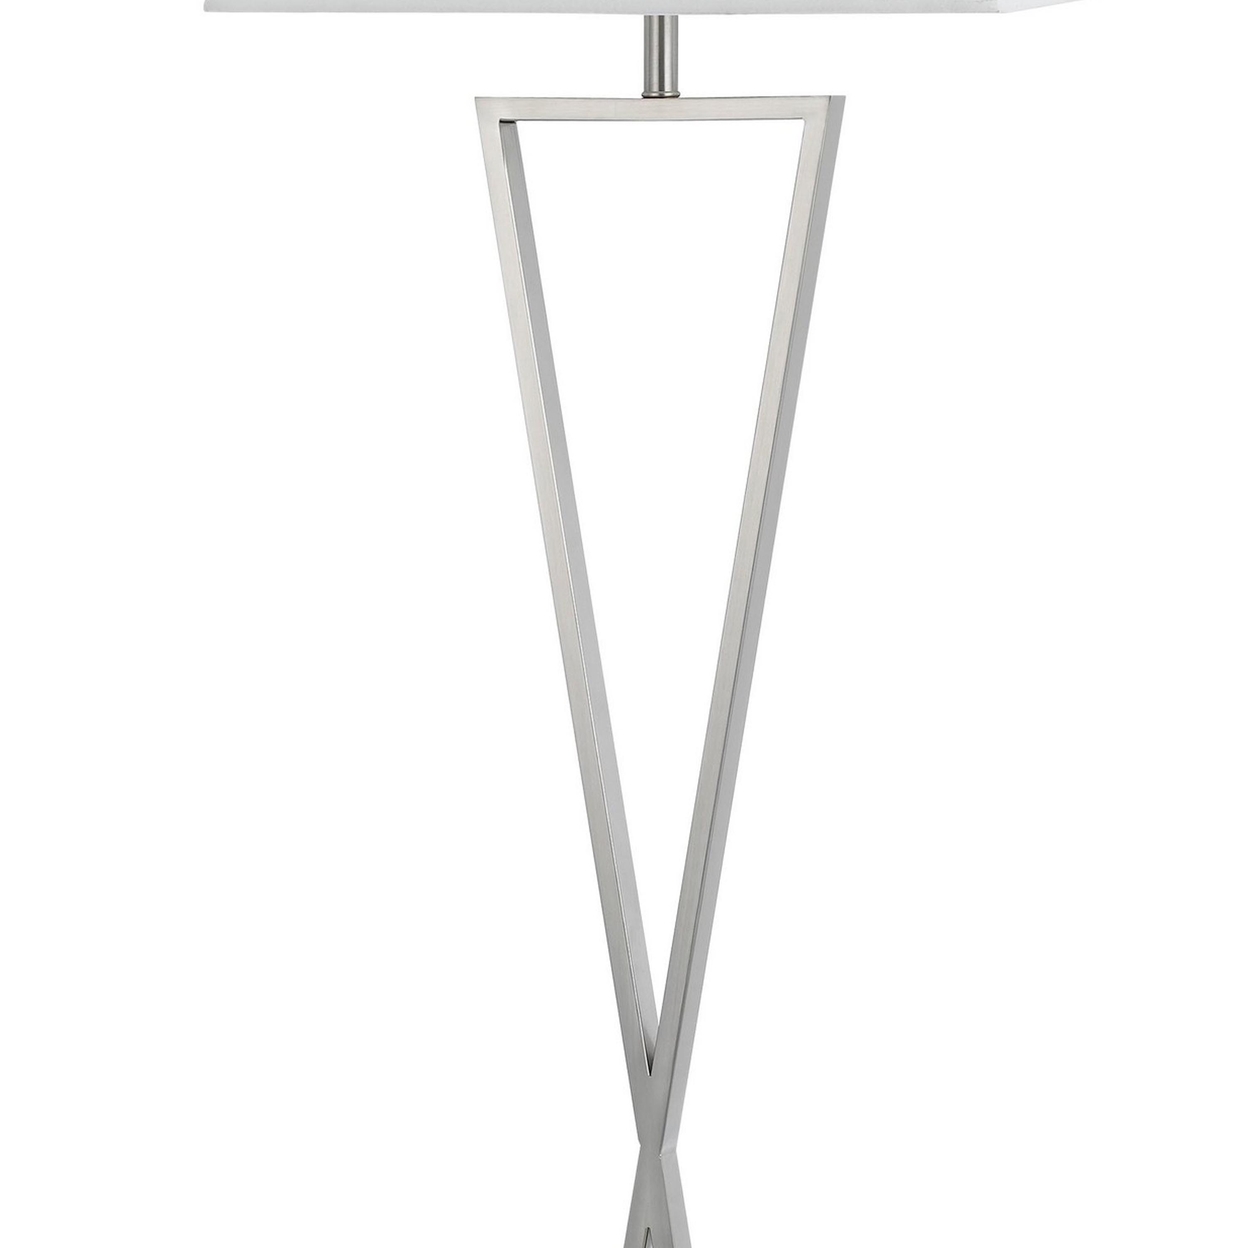 X Shaped Metal Body Floor Lamp With Rectangular Tapered Fabric Shade, White- Saltoro Sherpi